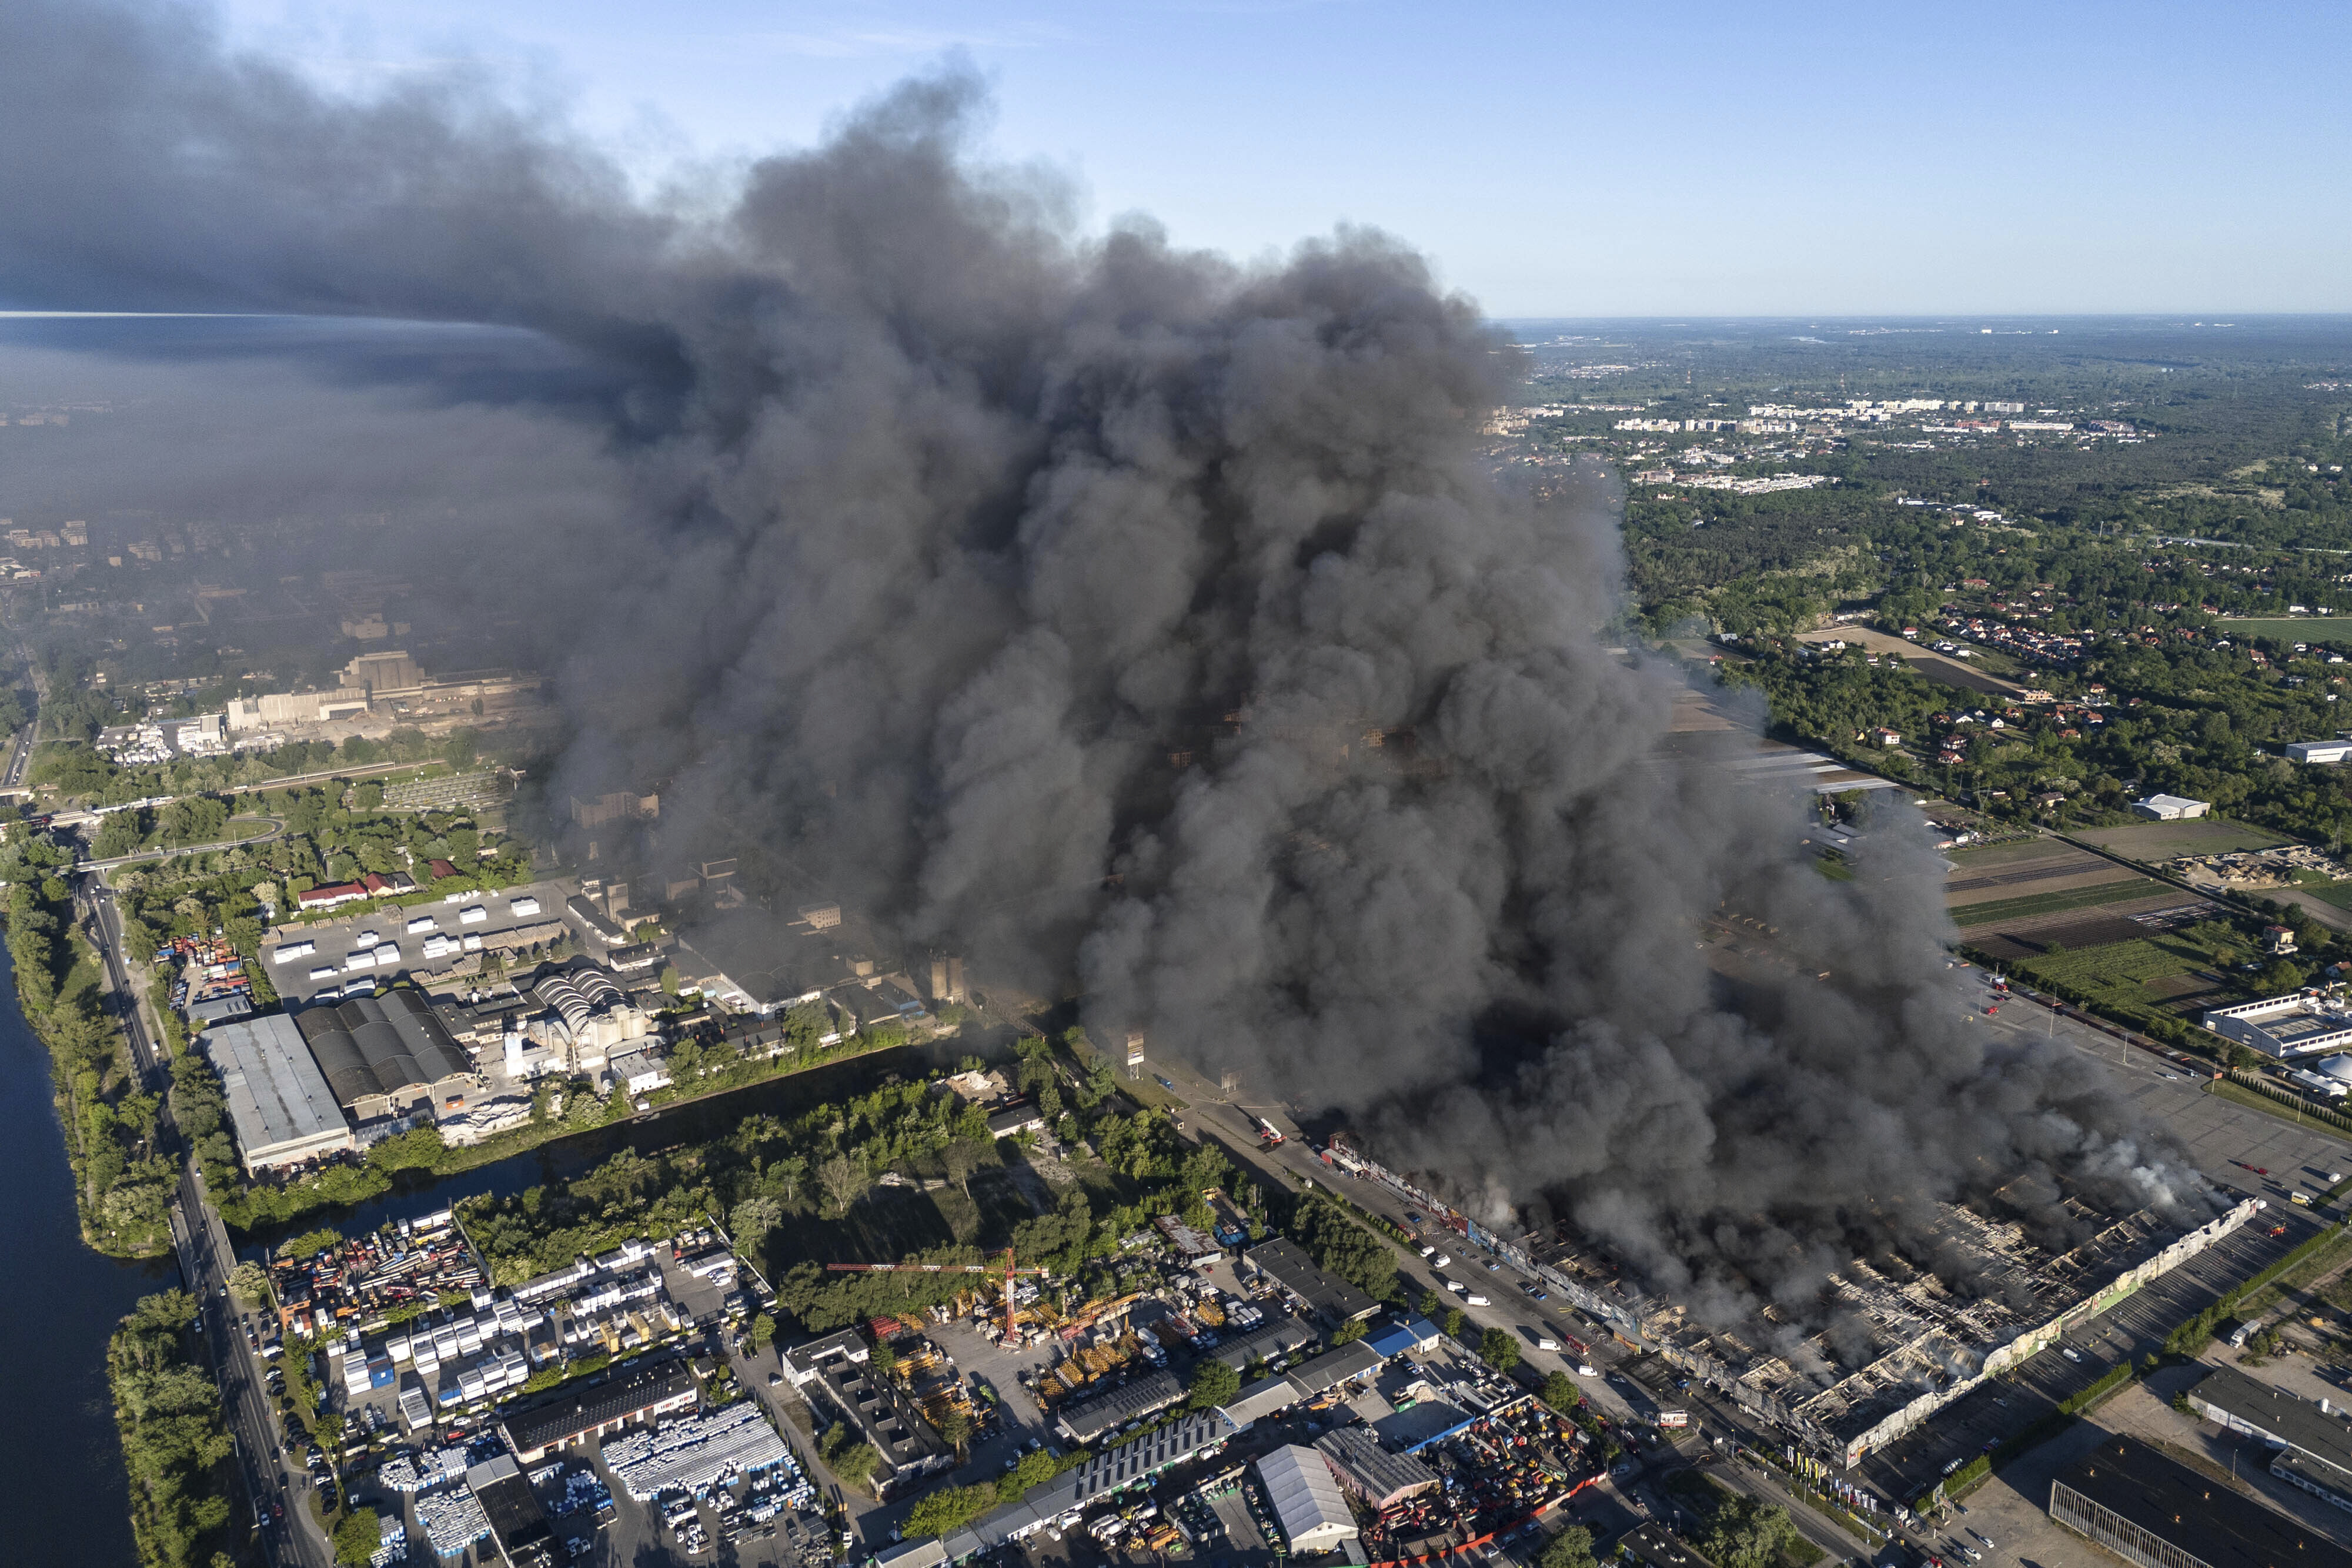 Fire burns down shopping center housing 1